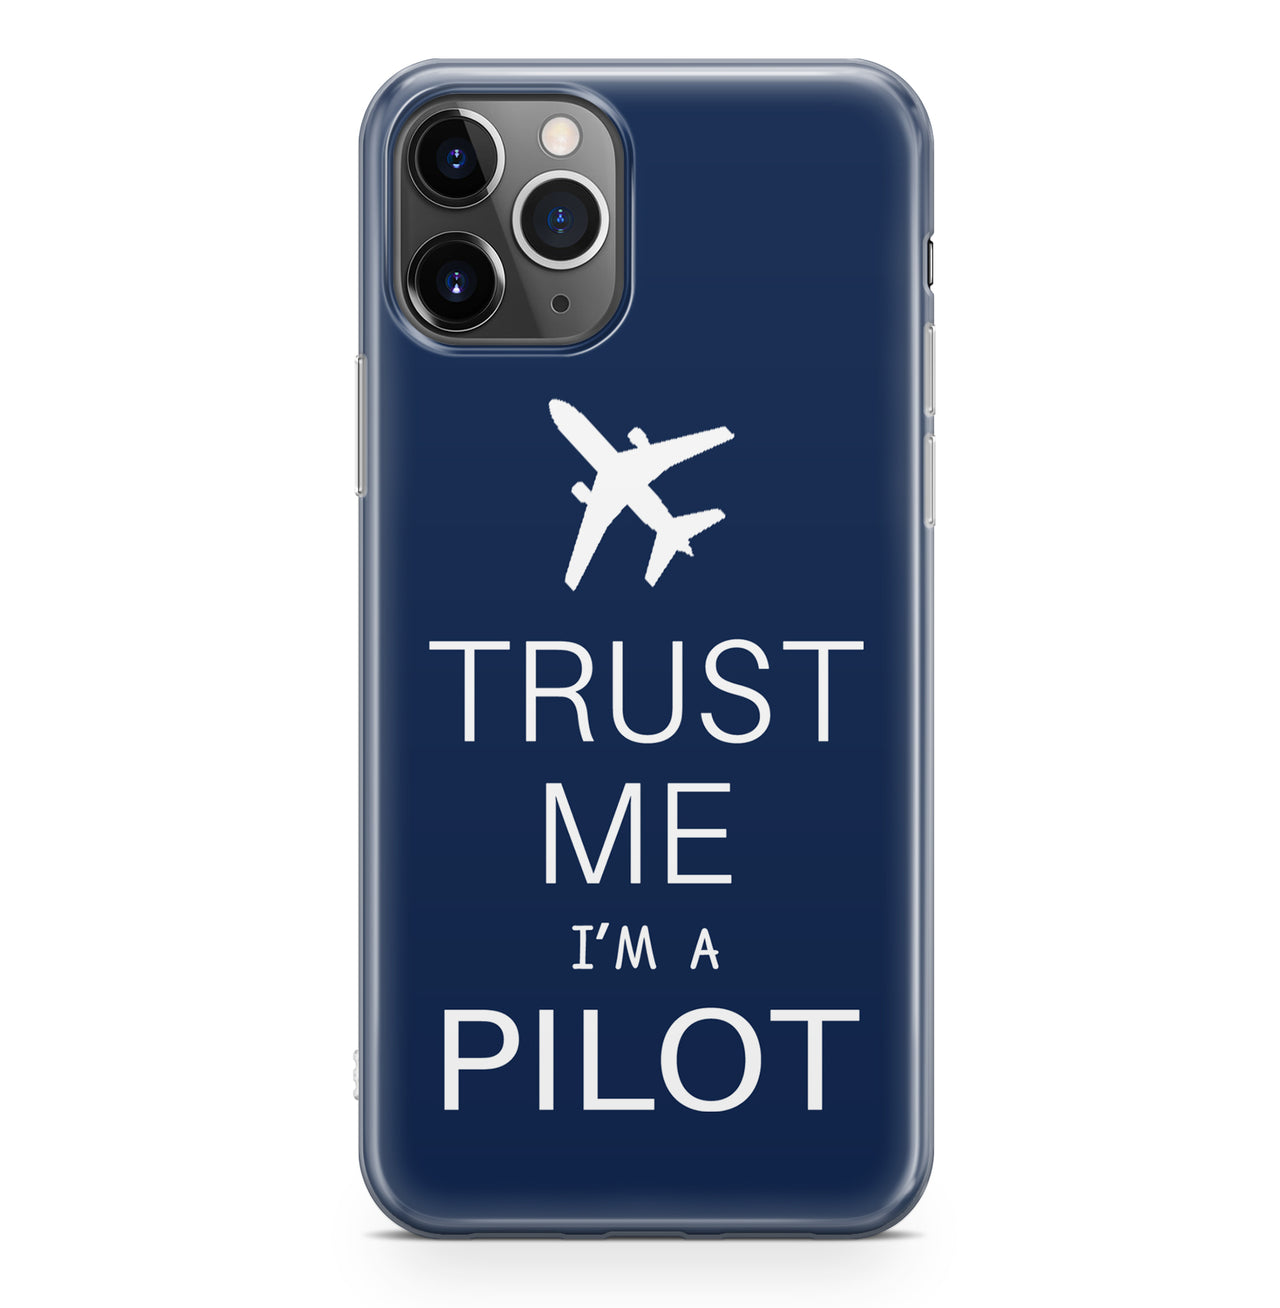 Trust Me I'm a Pilot 2 Designed iPhone Cases